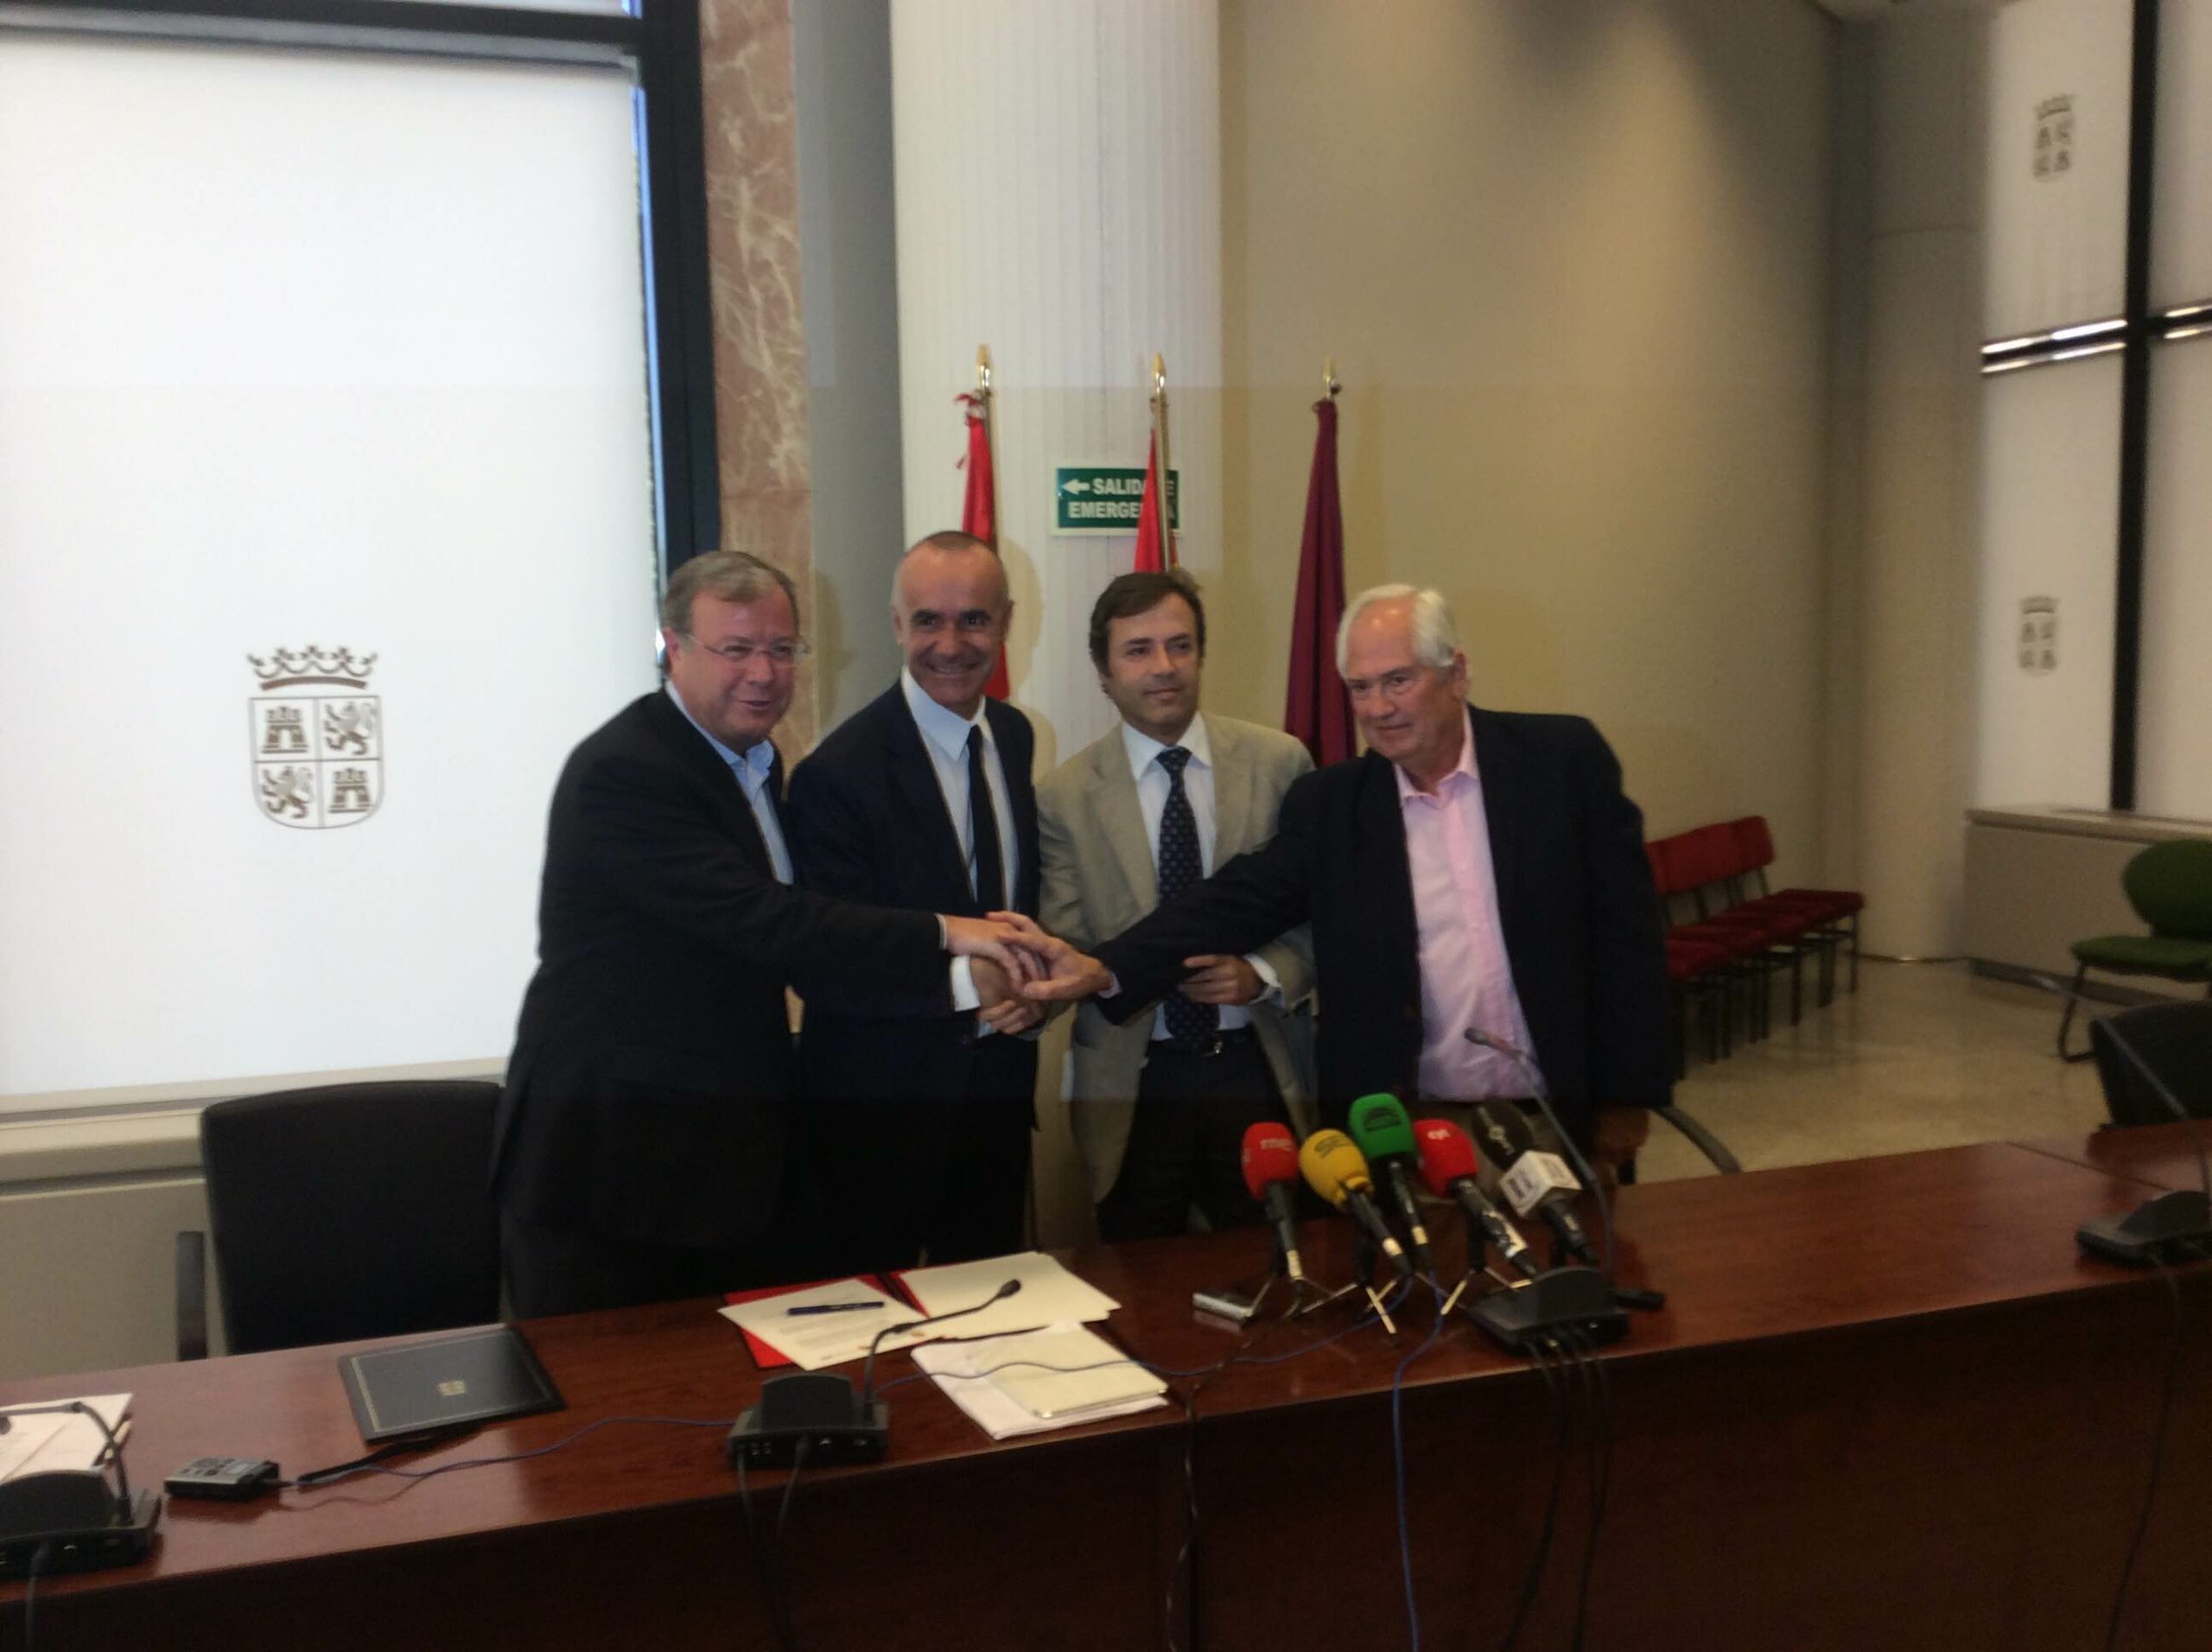 La Red de Ciudades AVE y Castilla y León firman un convenio de colaboración para la promoción turística de Avexperience